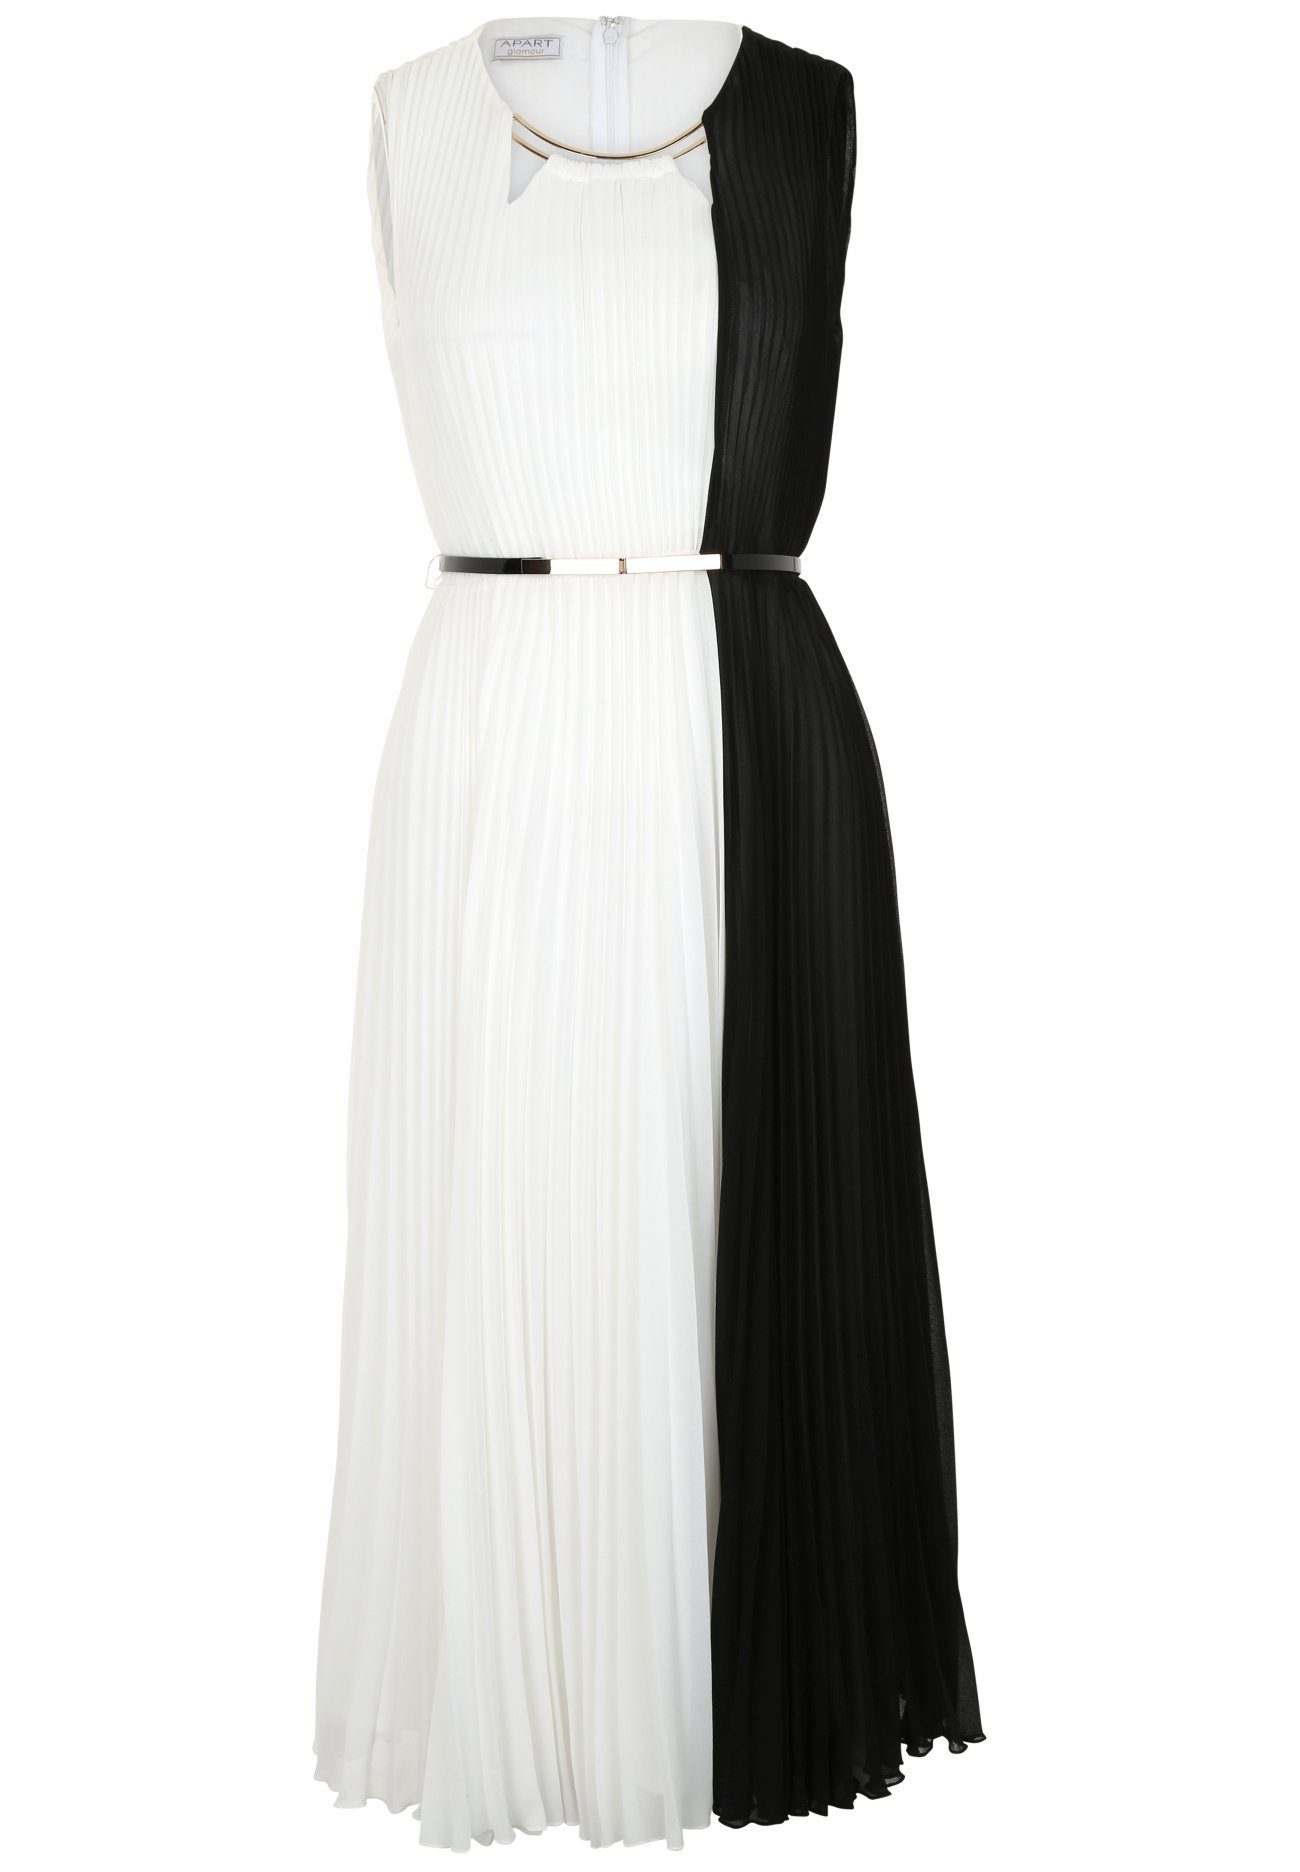 Apart Plisseekleid mit Cutouts, zweifarbiges Abendkleid mit Taillengürtel  online kaufen | OTTO